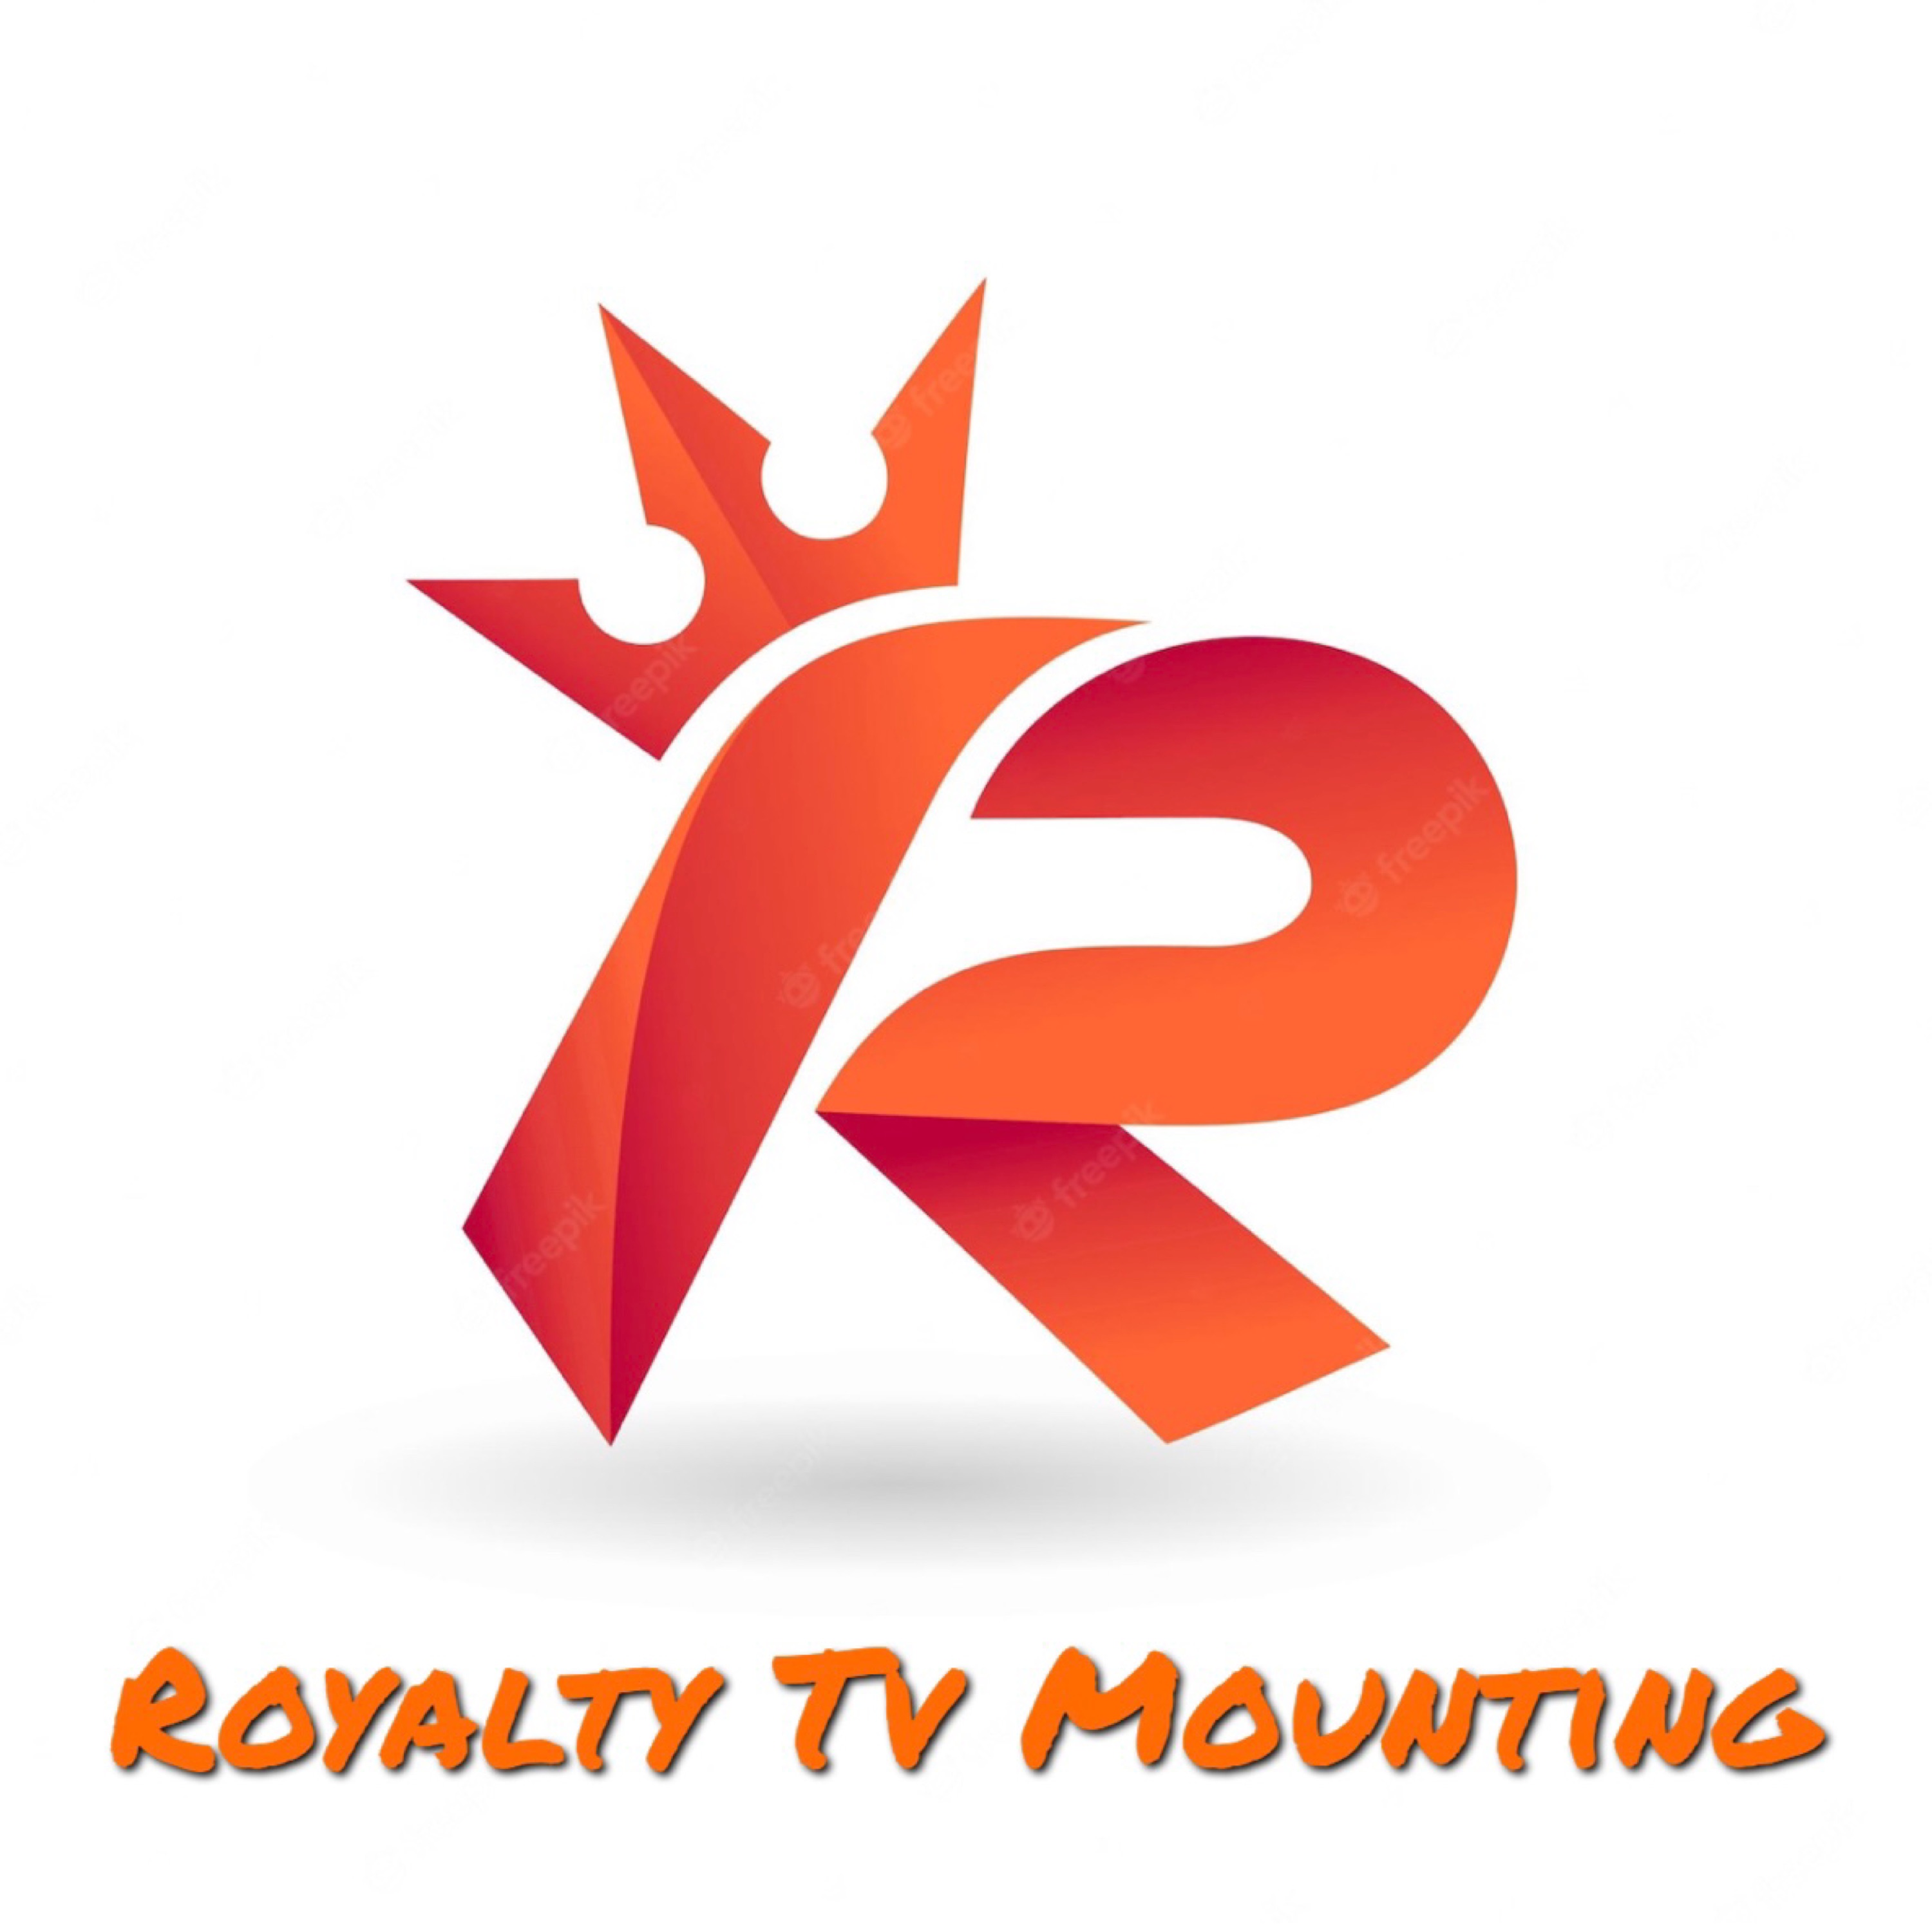 Royalty TV Mounting Logo